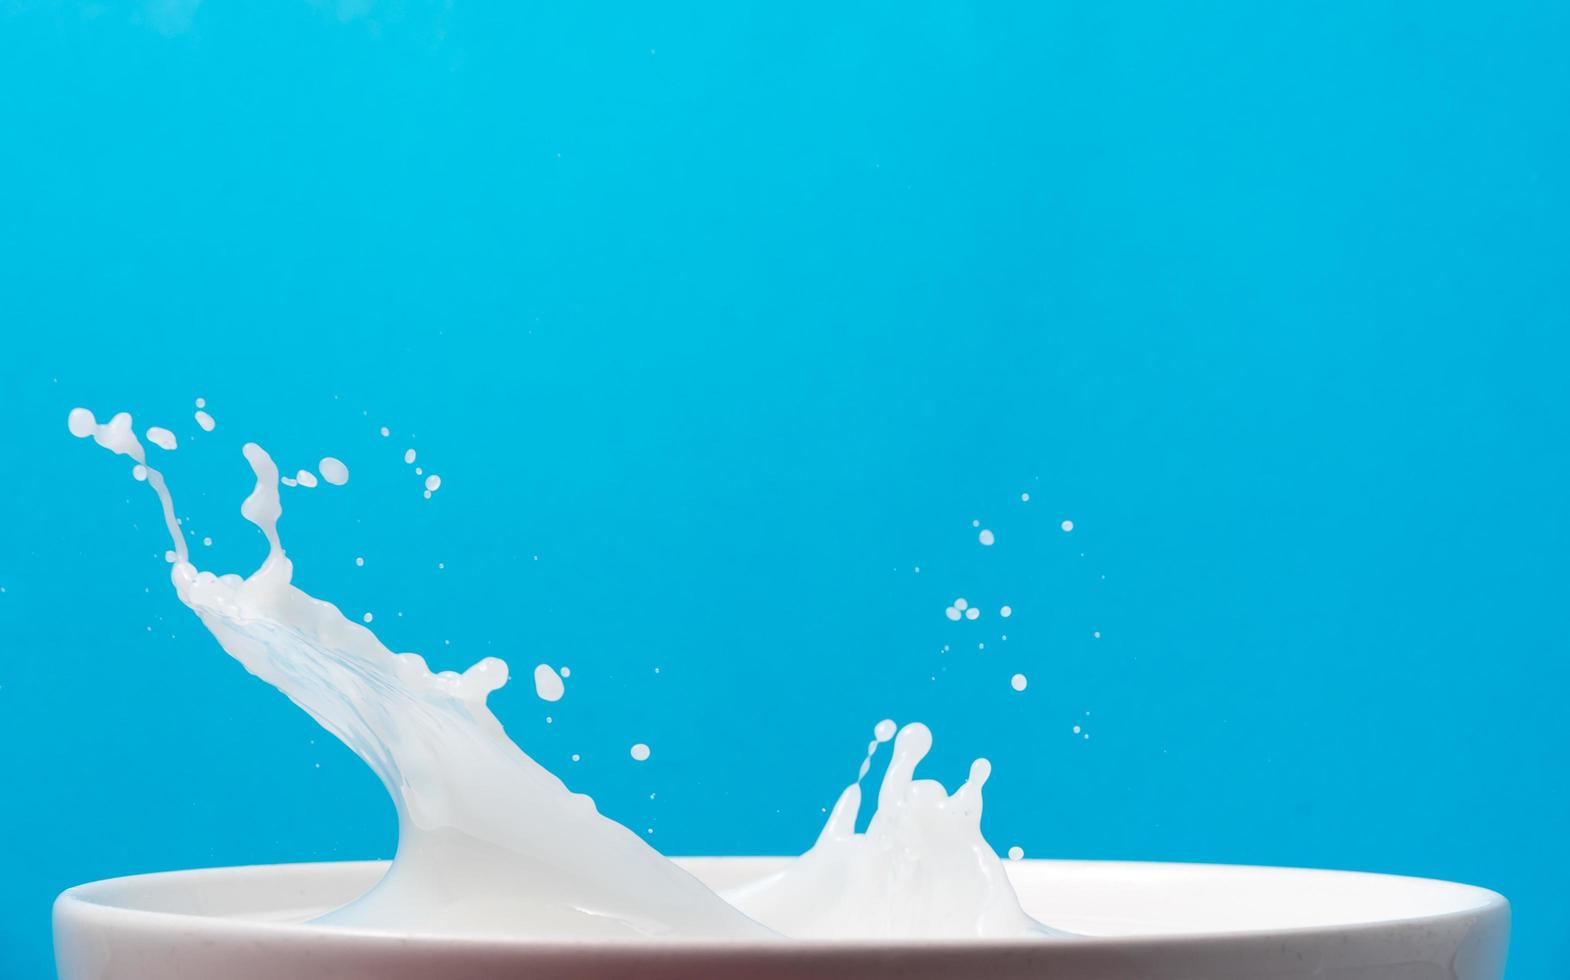 chorrito de leche de una taza sobre fondo azul. foto